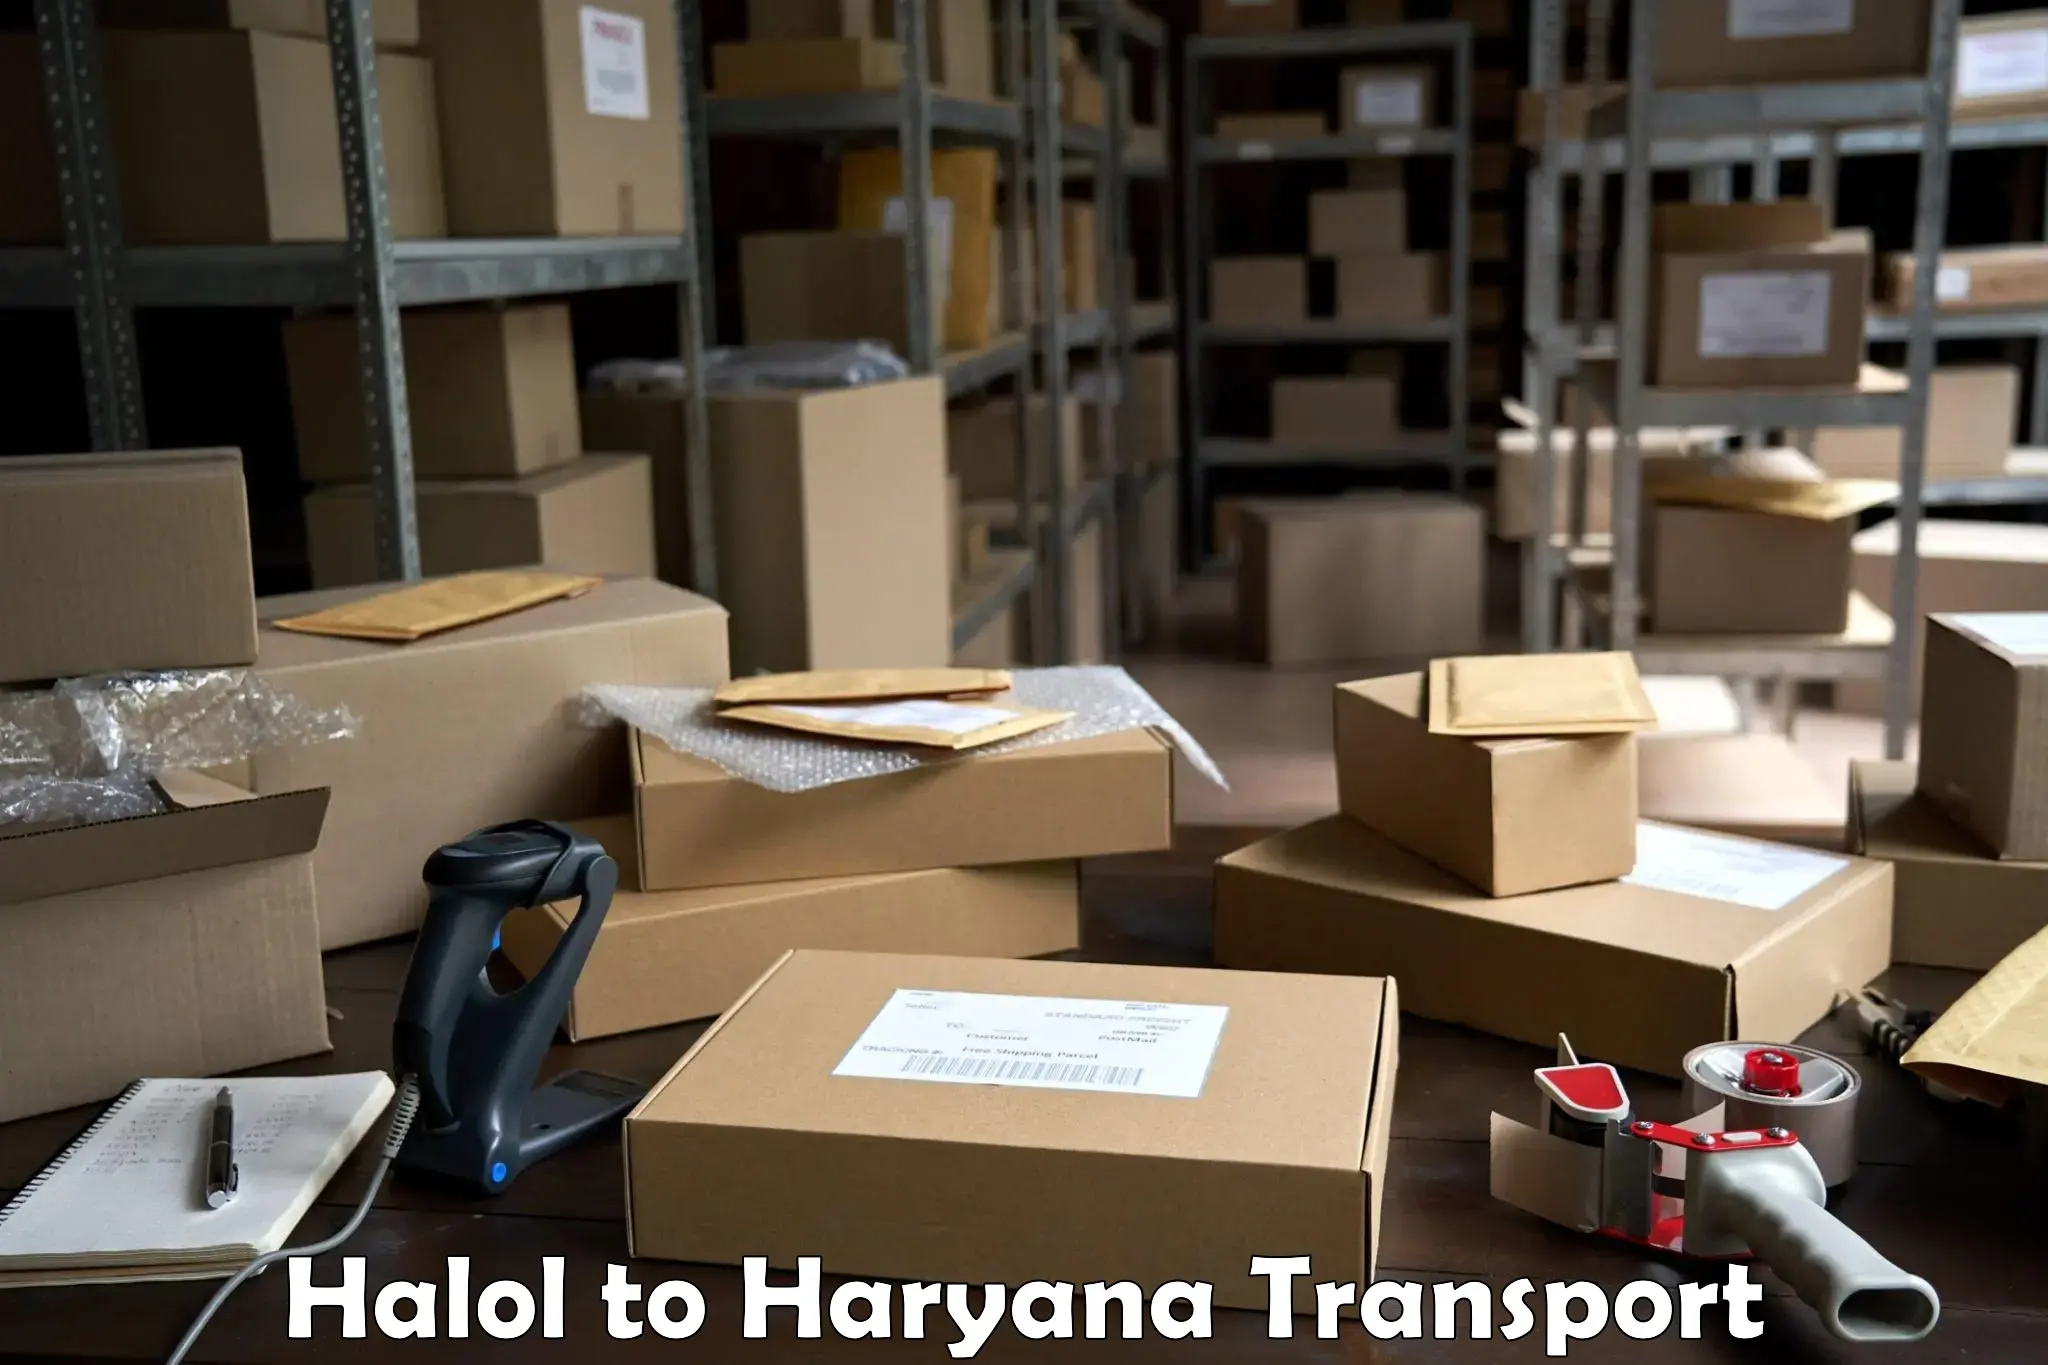 Furniture transport service Halol to Pehowa